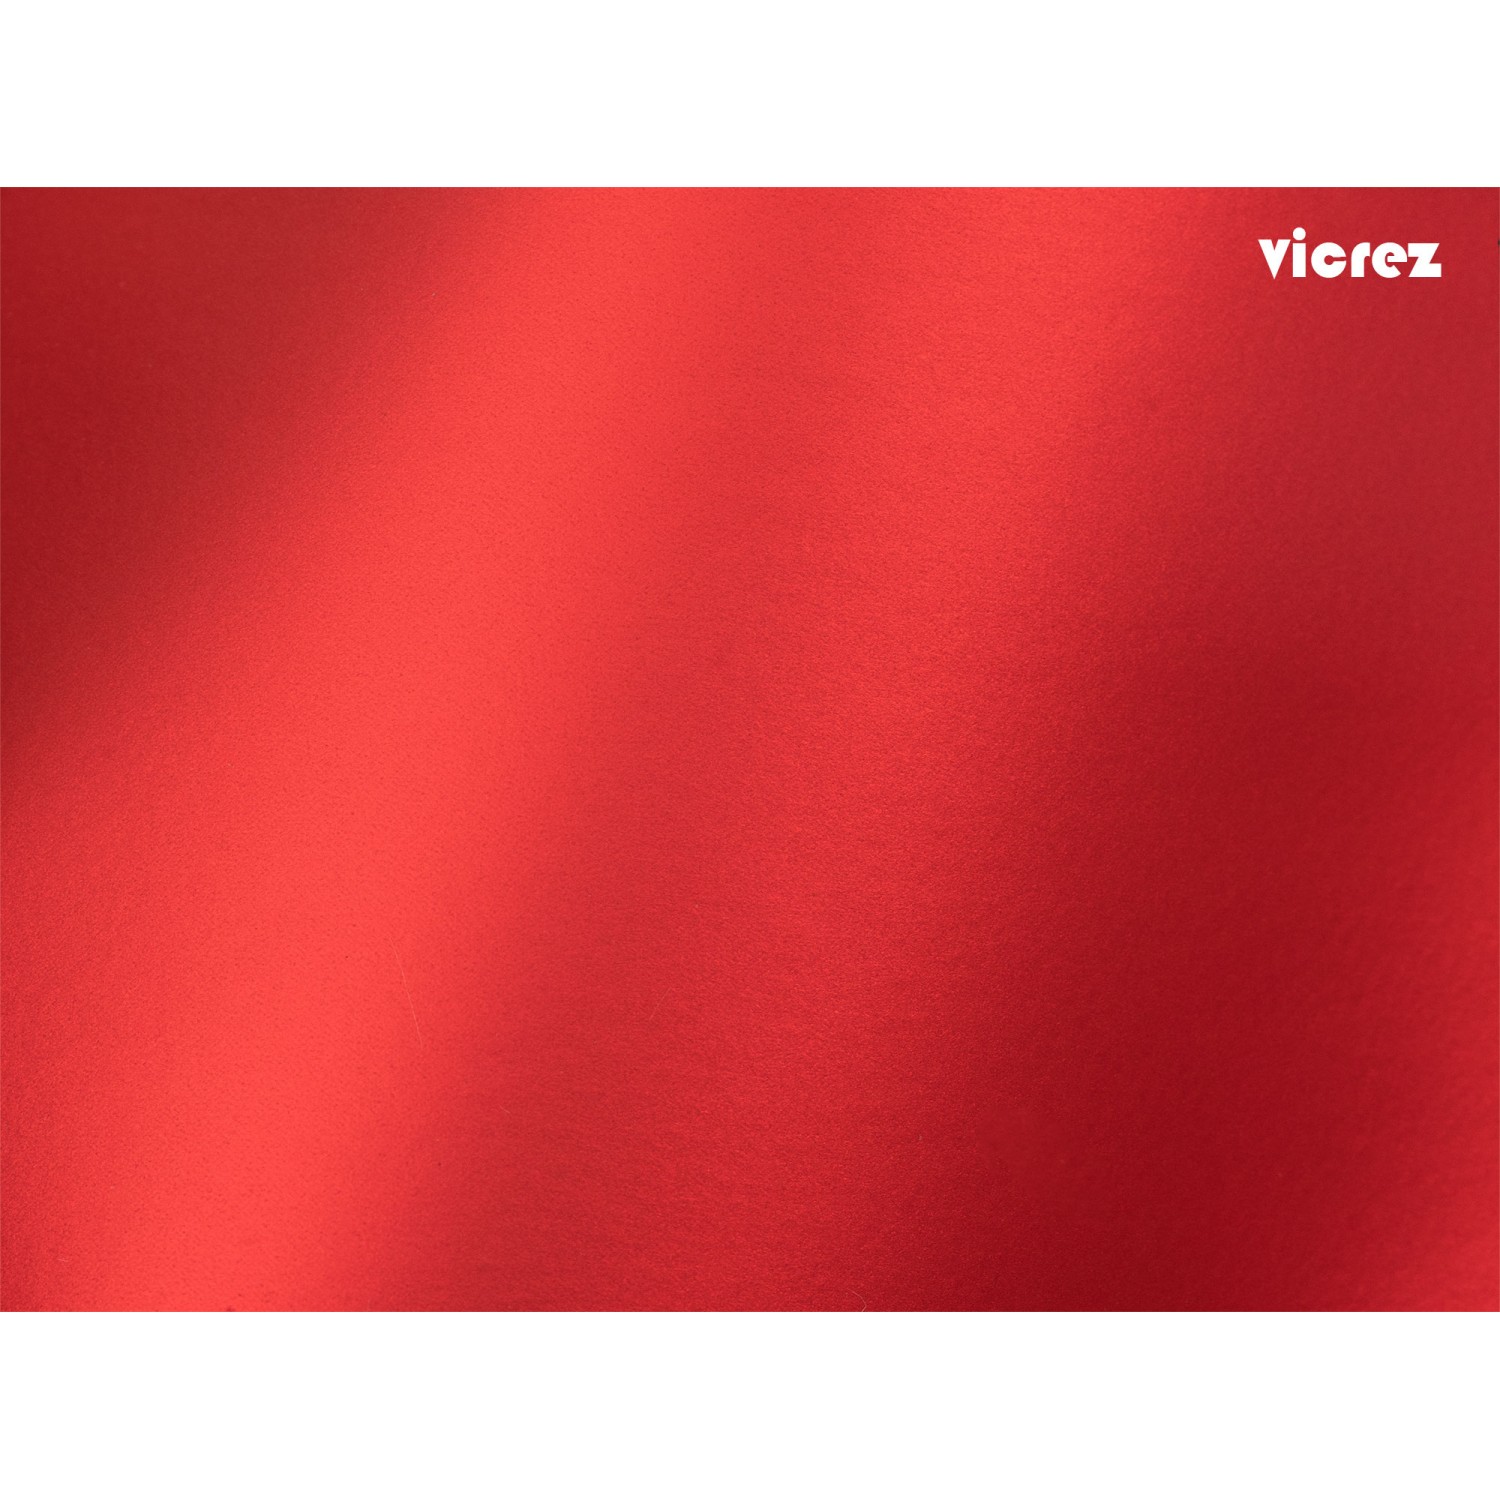 indelukke Landbrug på den anden side, Vicrez Vinyl Car Wrap Film vzv10112 Chrome Satin Red